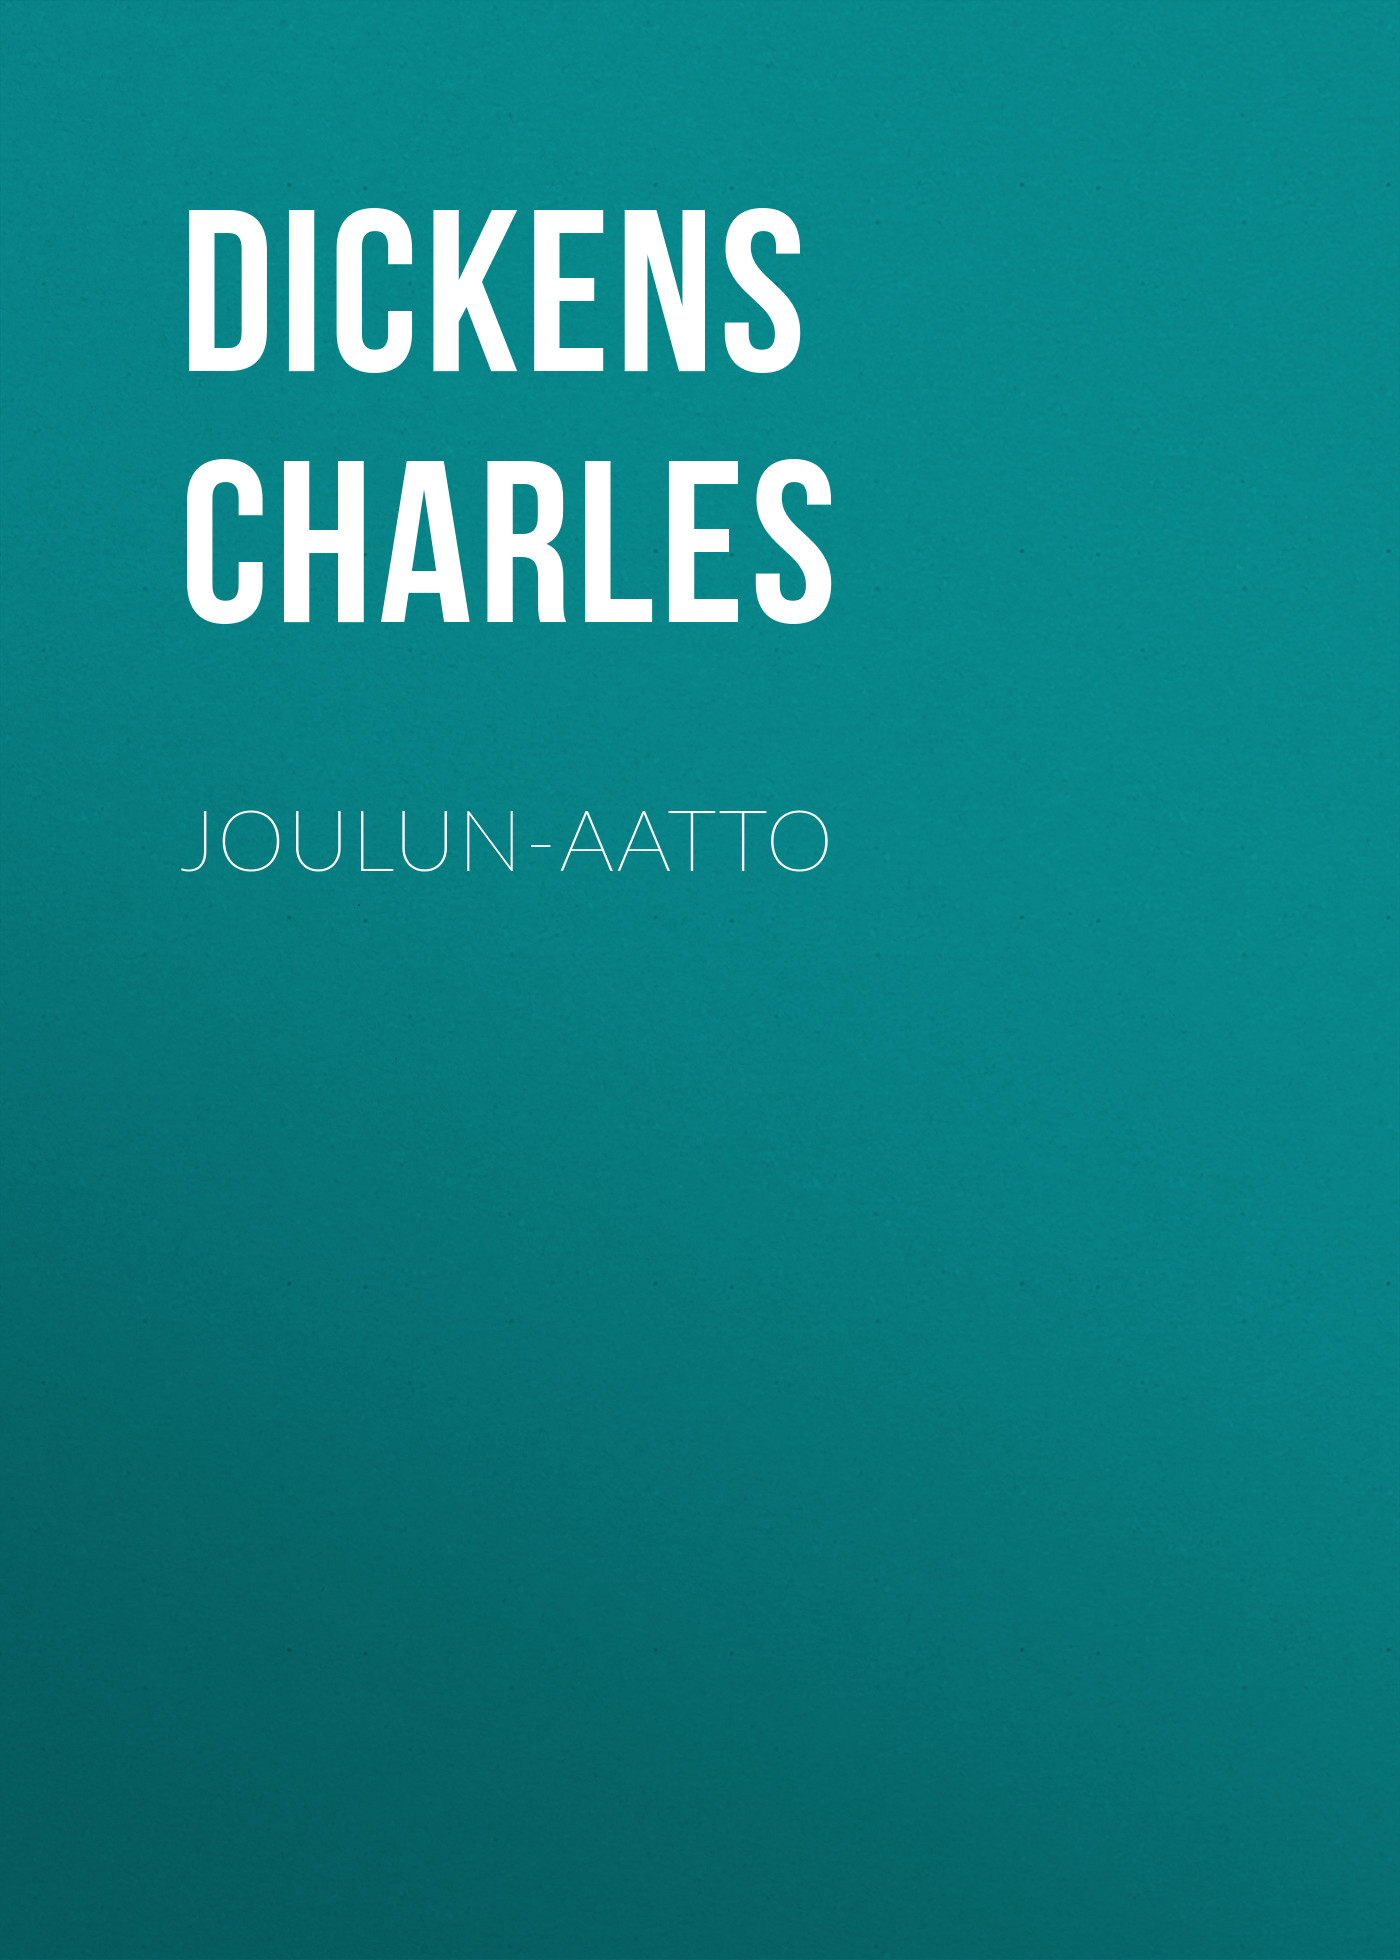 Книга Joulun-aatto из серии , созданная Charles Dickens, может относится к жанру Зарубежная старинная литература, Зарубежная классика. Стоимость электронной книги Joulun-aatto с идентификатором 25092956 составляет 0 руб.